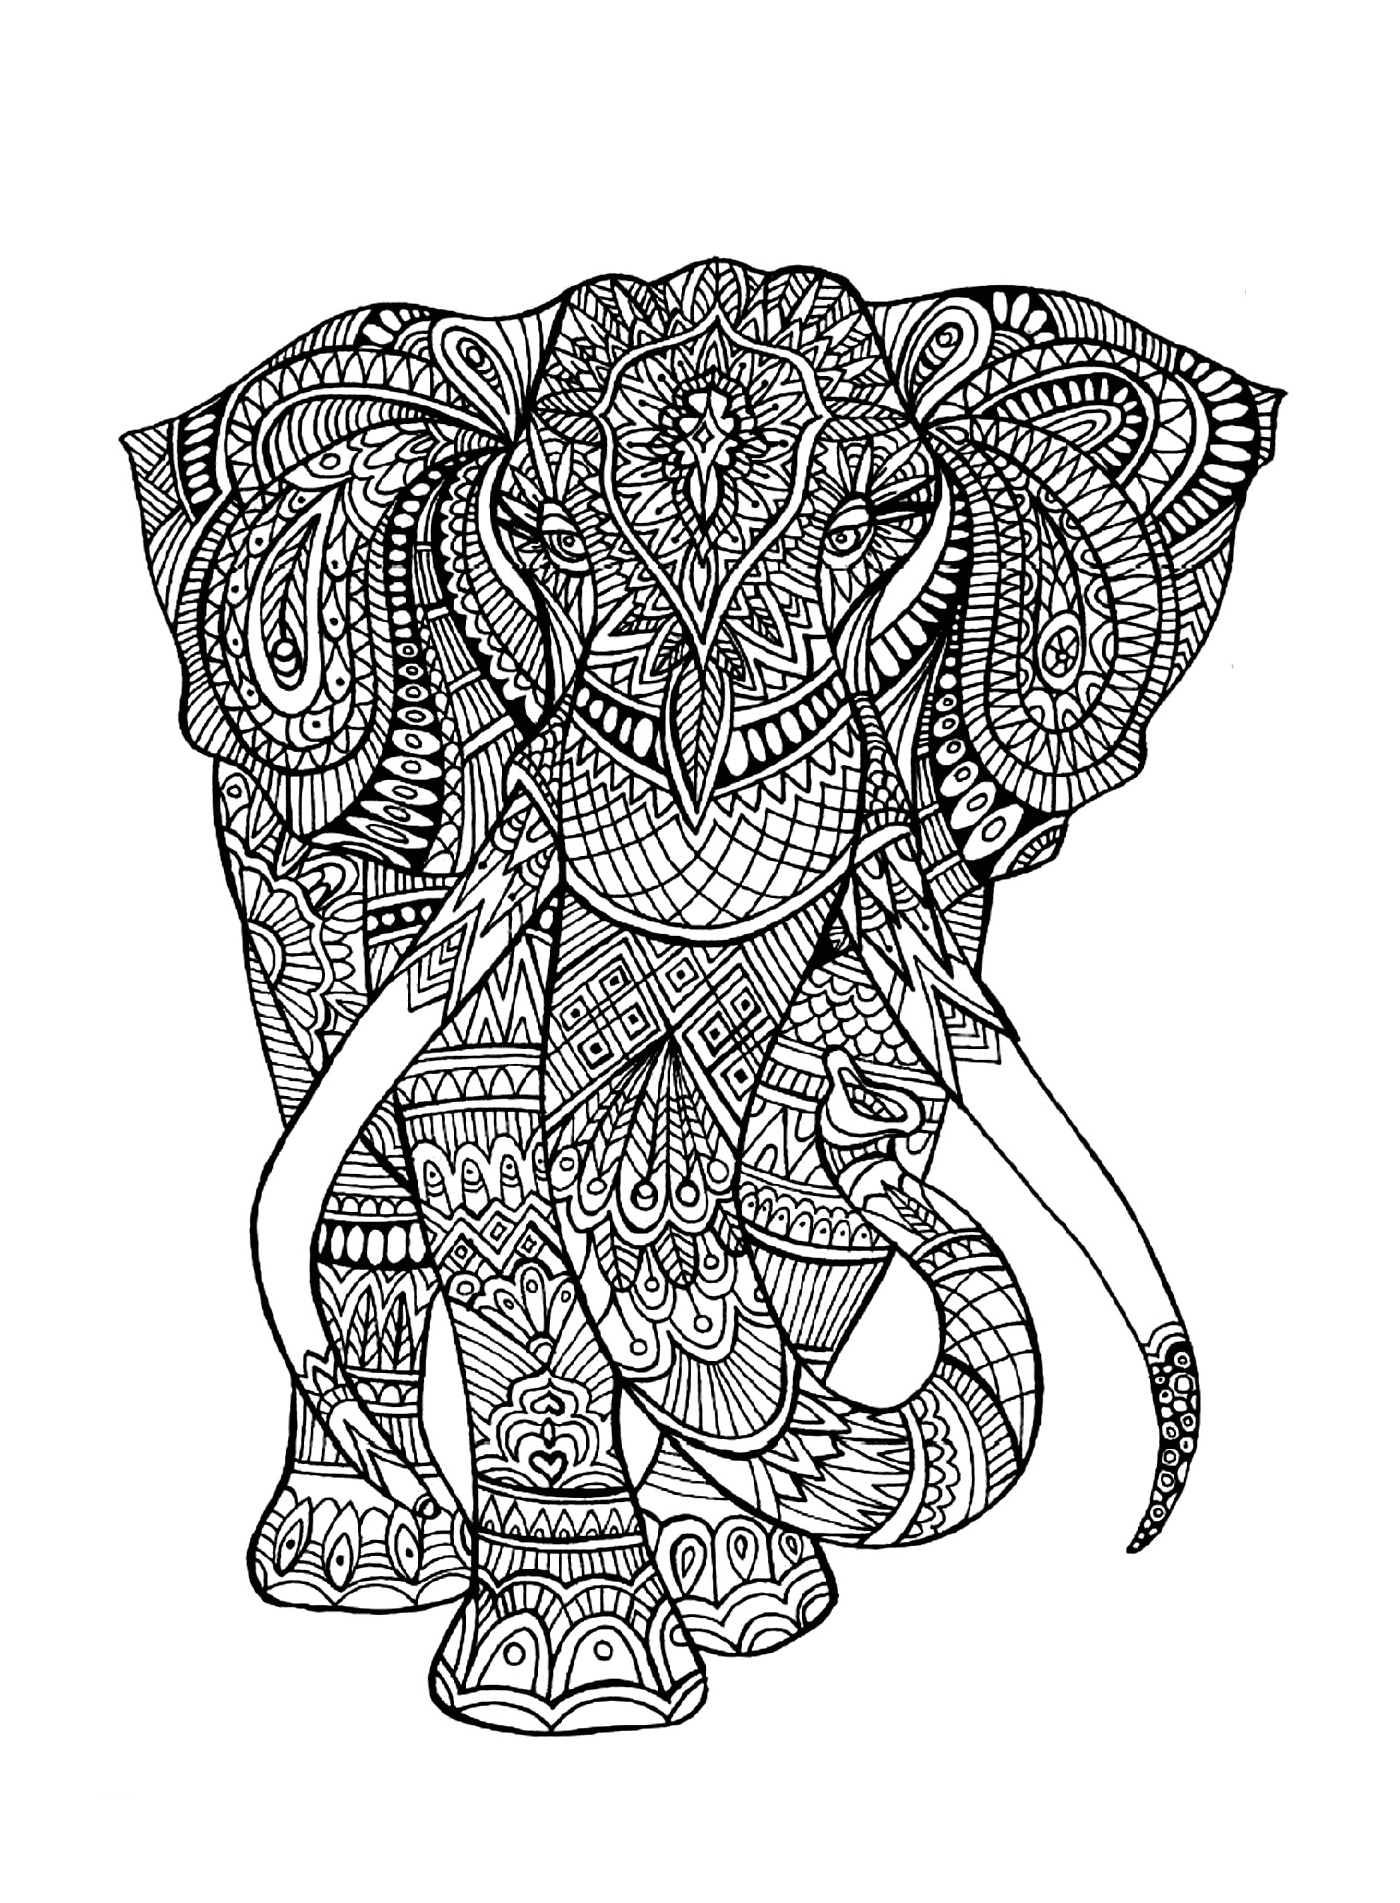  Ein Elefant mit komplexen Mustern auf seinem Körper 